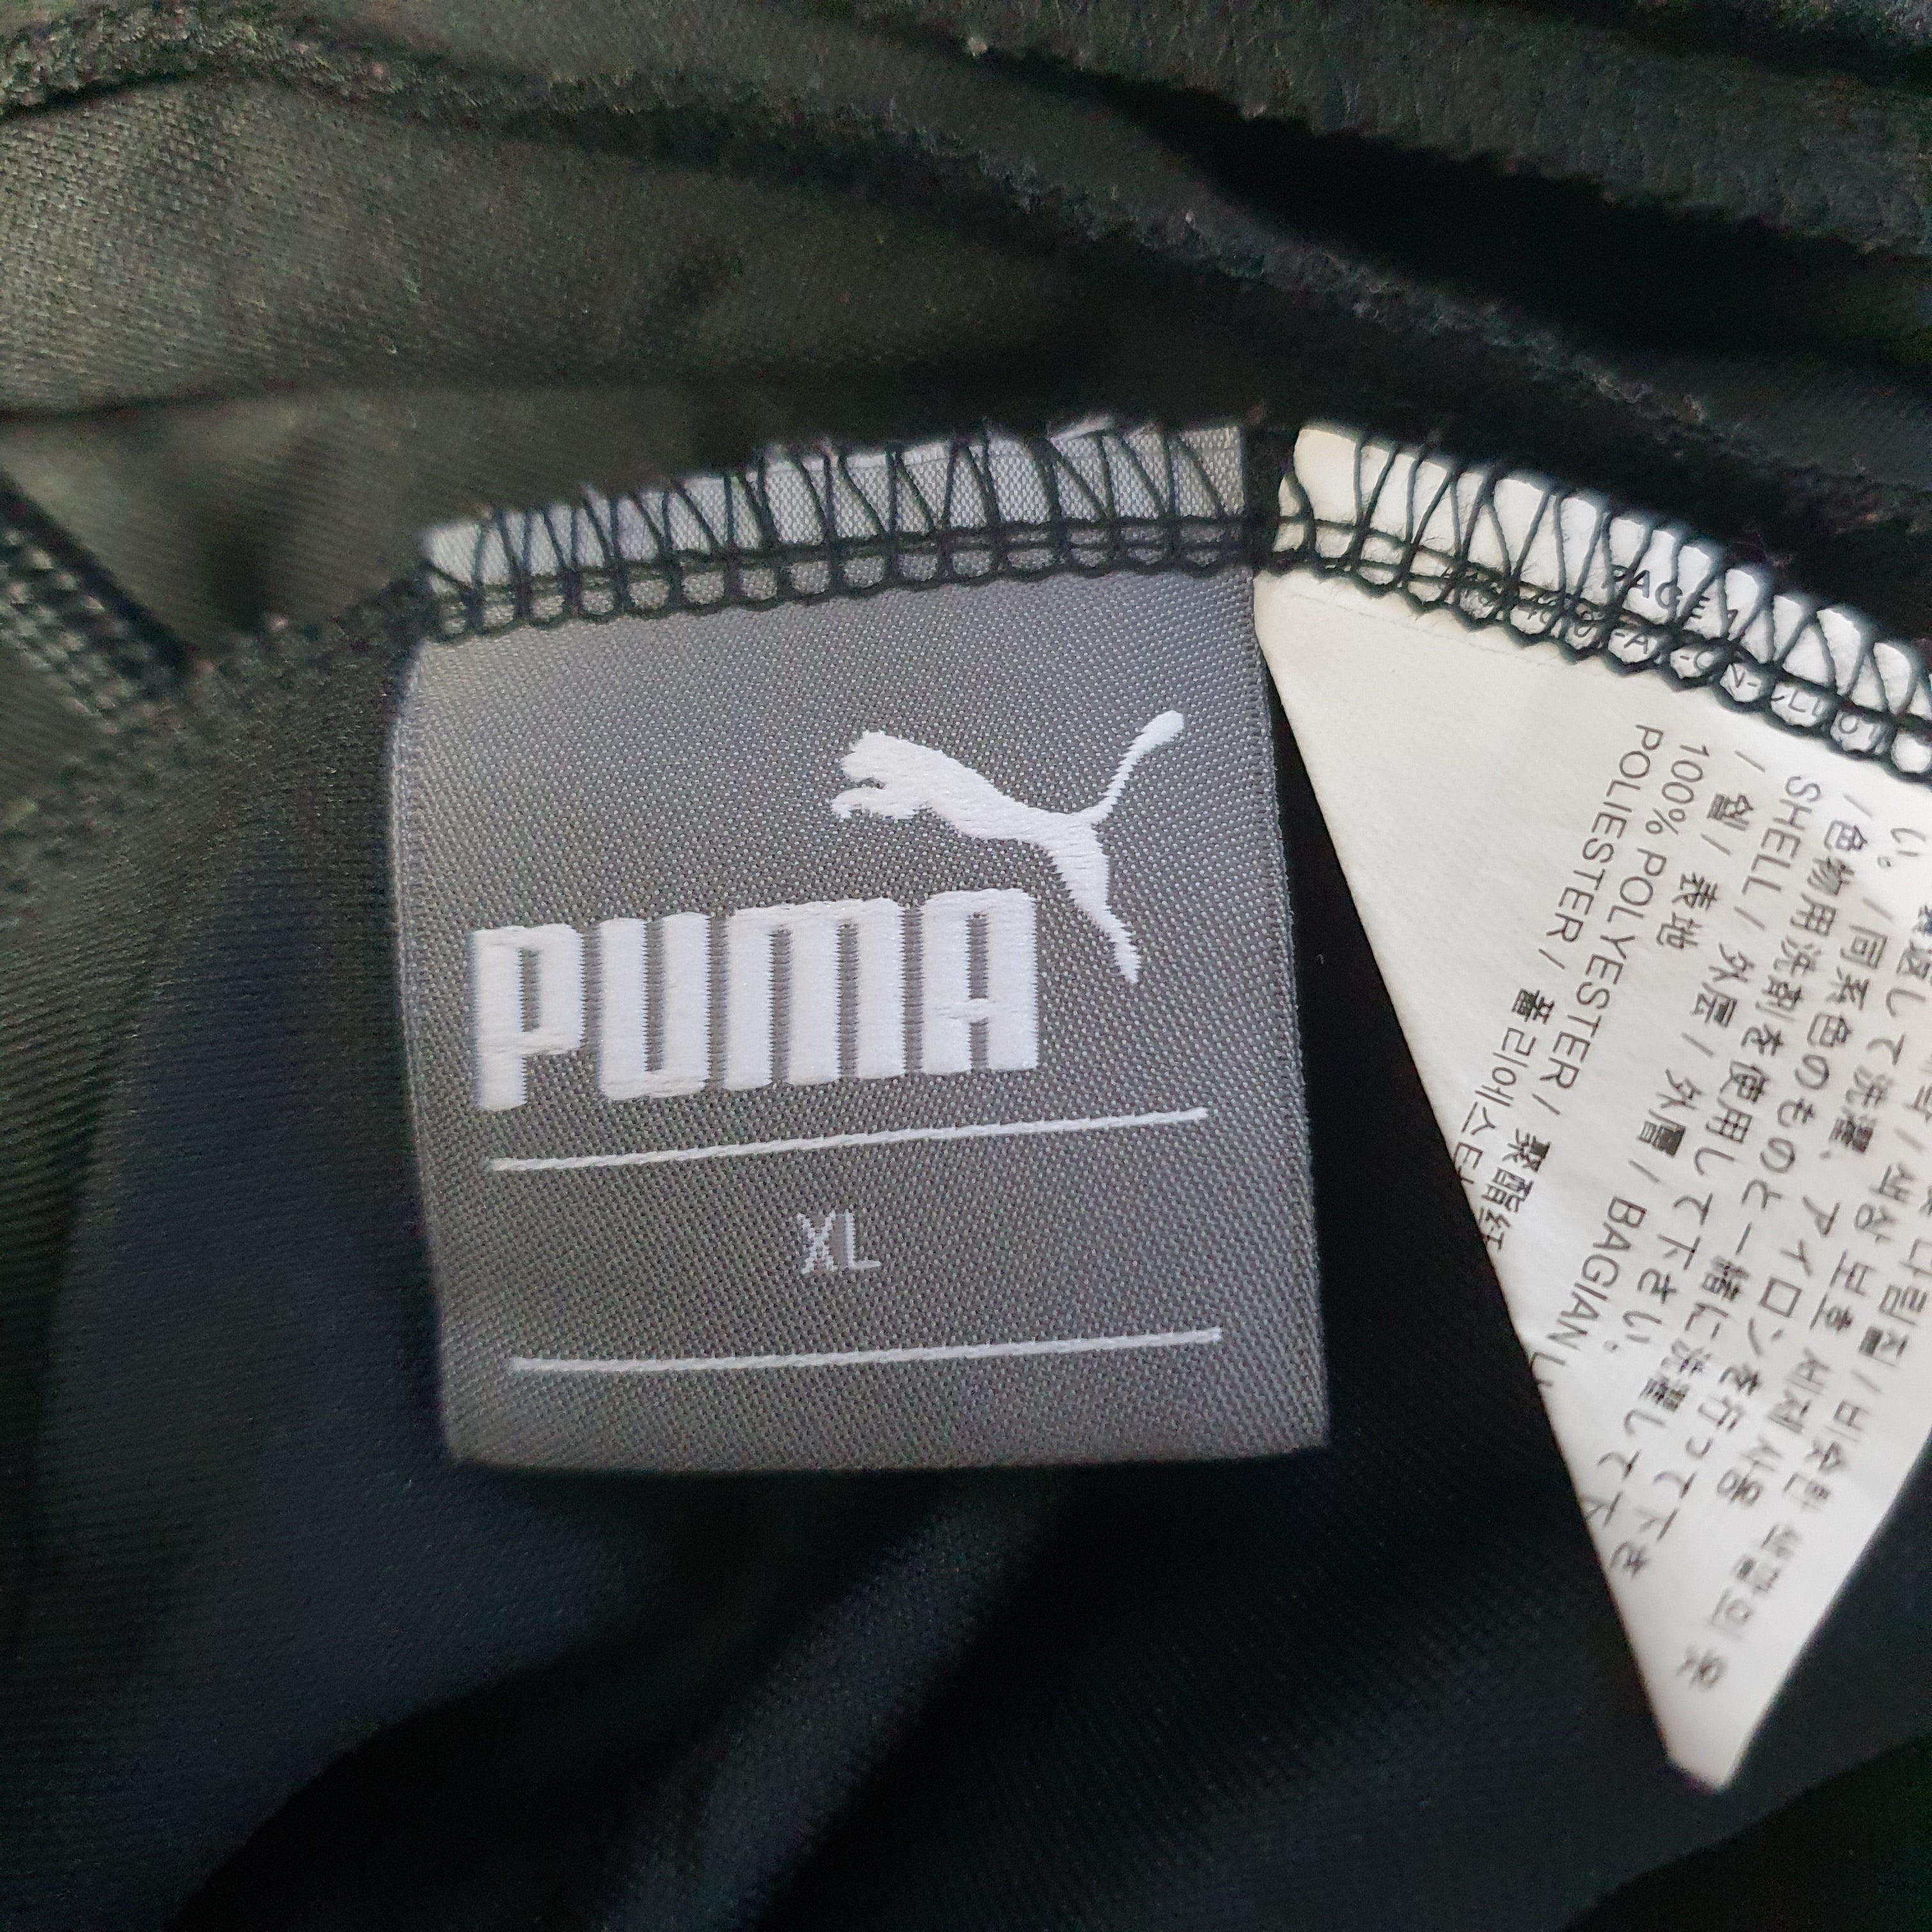 [XL] Puma Shorts